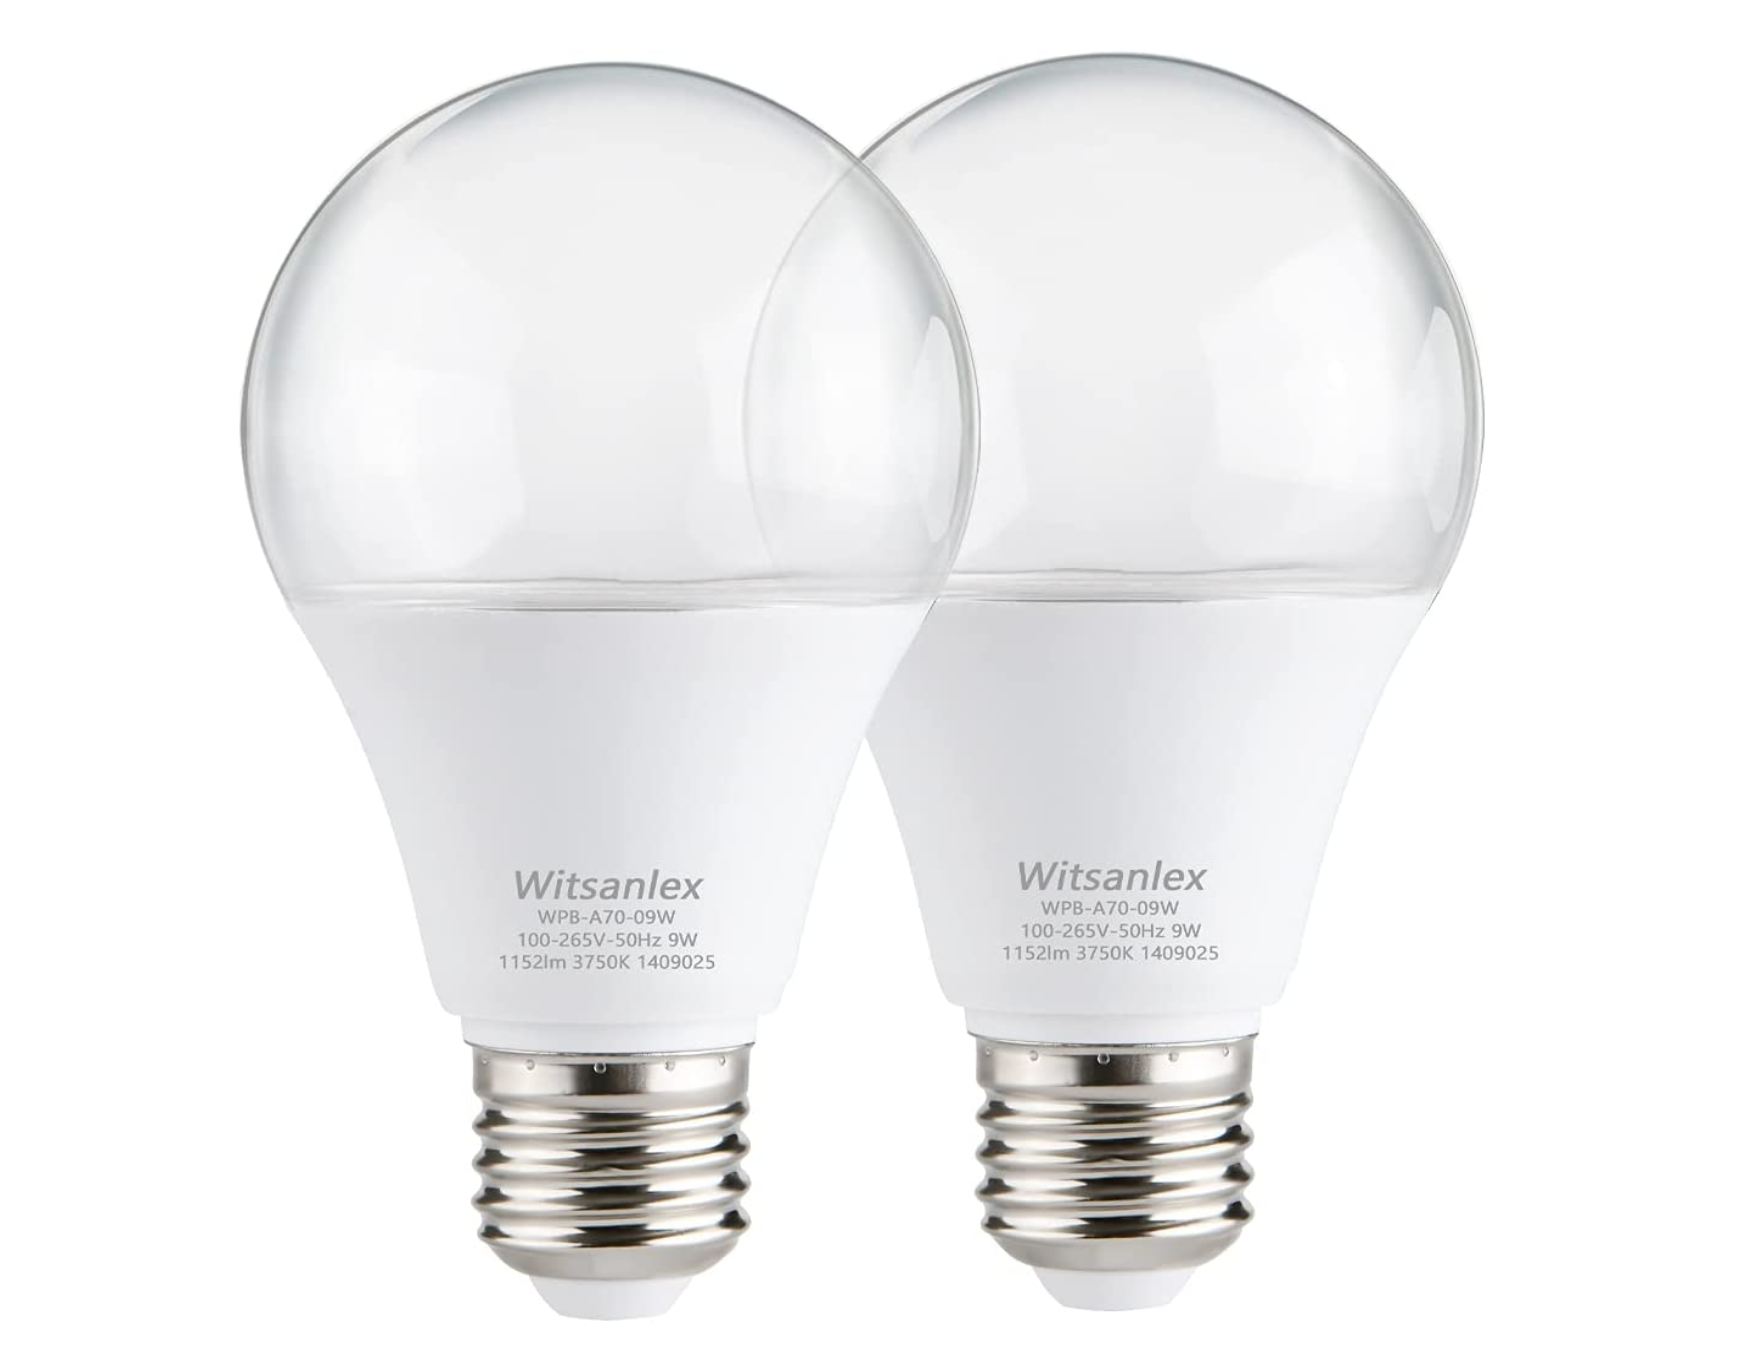 Full Spectrum Sunlike "Grow Light" Bulb for Indoor Plants (100W | 84 LEDs)